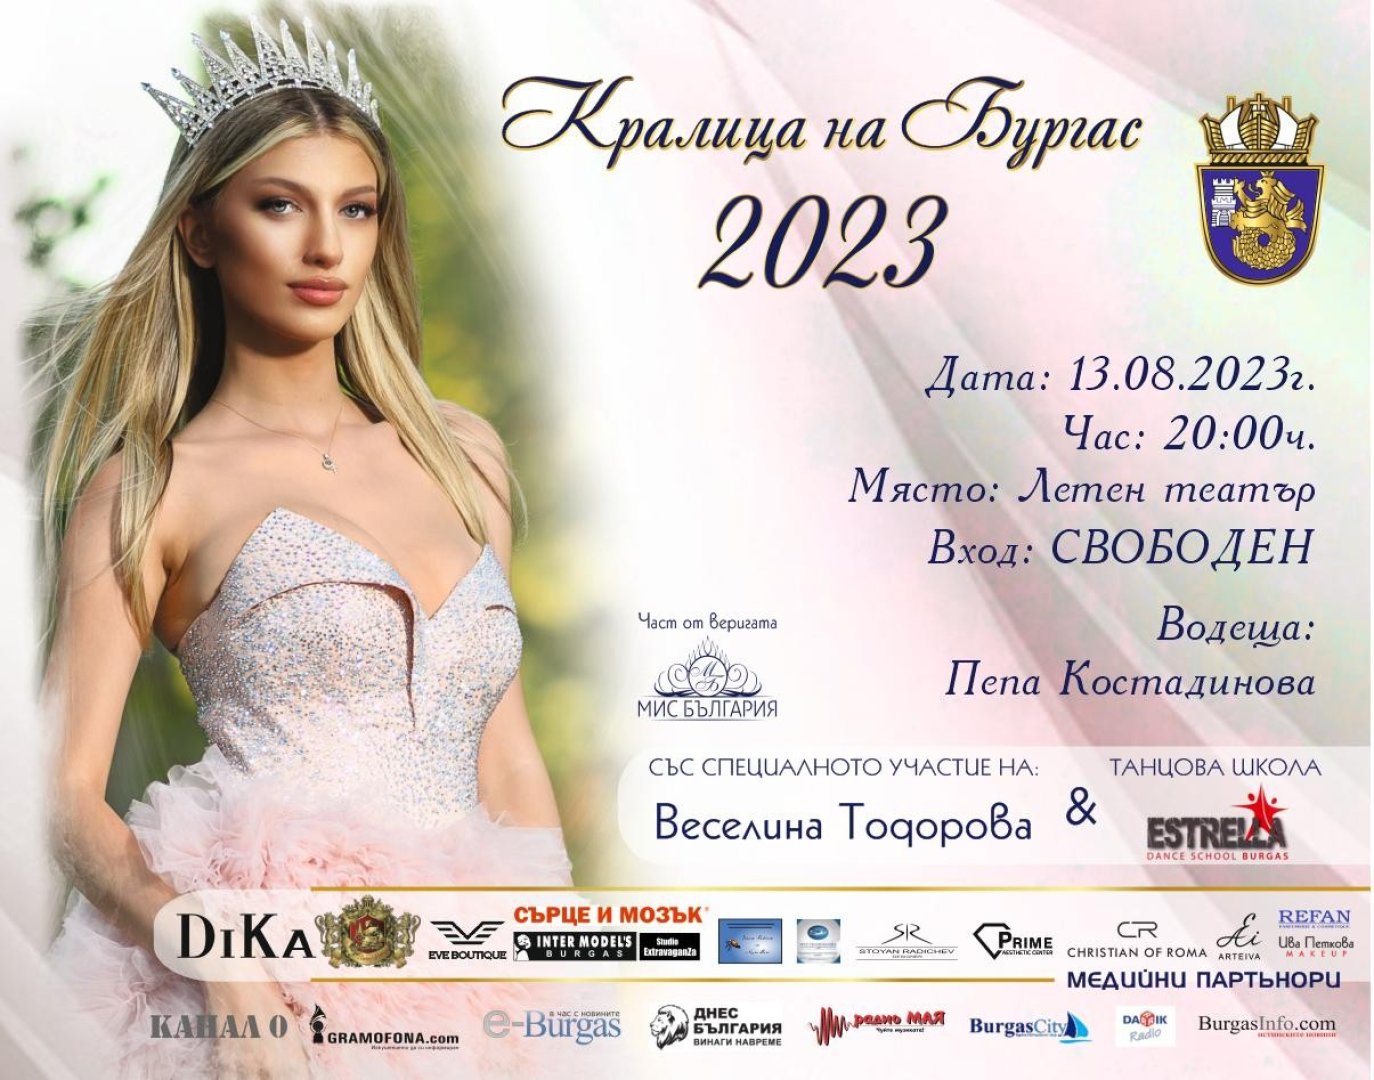 Атрактивно жури с обичани лица от малкия екран ще оценяват и избират претендентките в конкурса Кралица на Бургас 2023 г  - E-Burgas.com